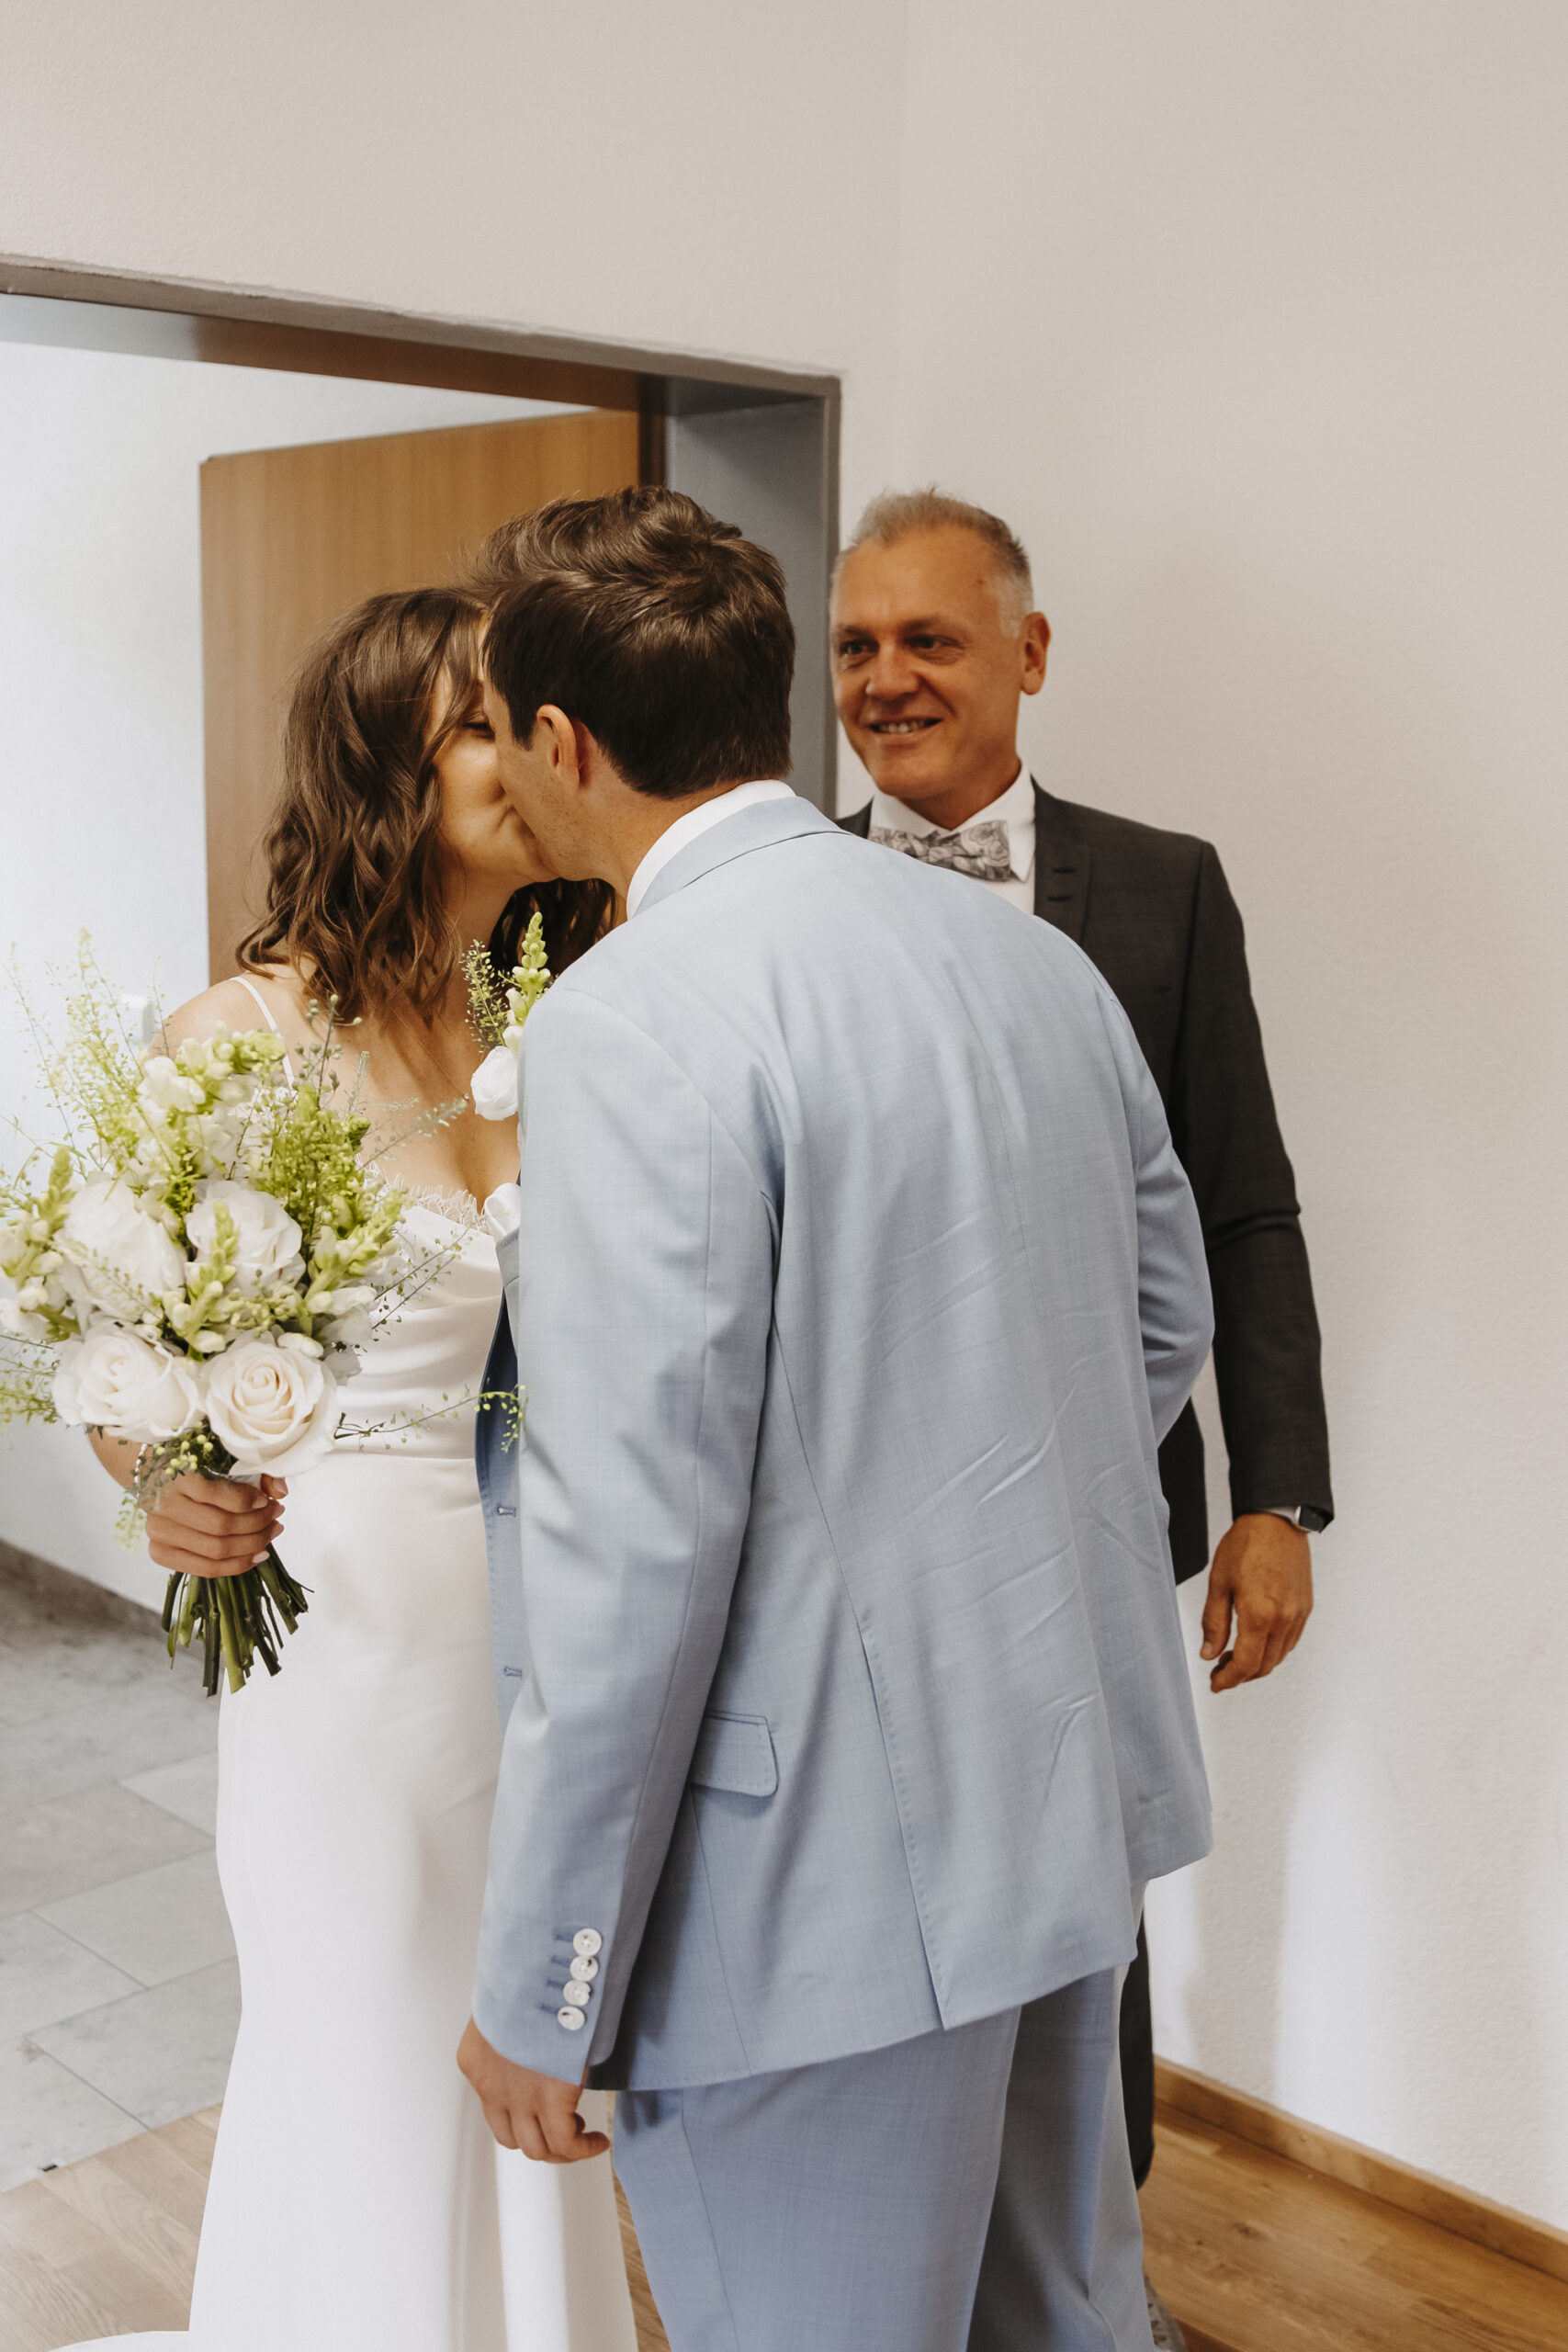 Braut und Bräutigam sehen sich das erste Mal und küssen sich vor dem Brautvater